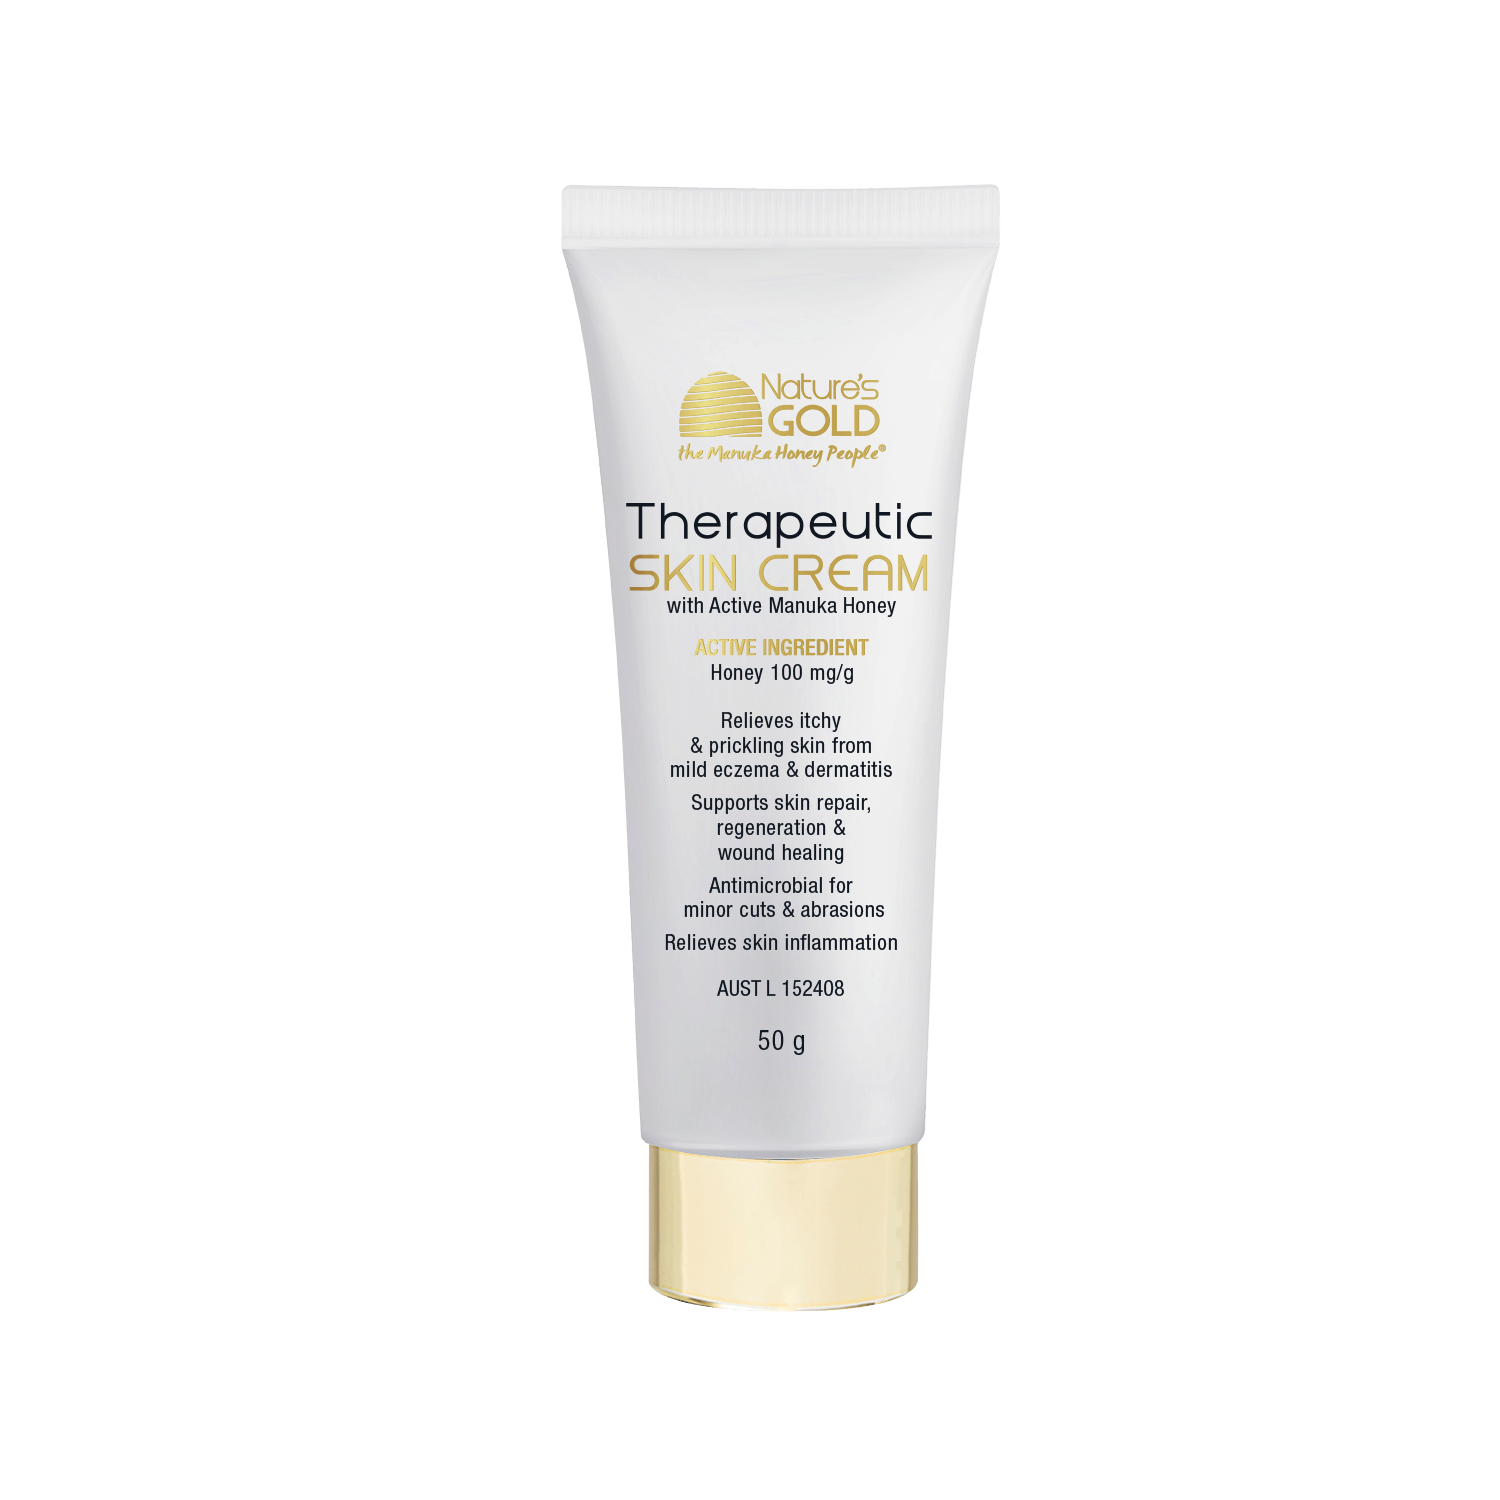 TGA listed Therapeutic Skin Cream with Manuka Honey